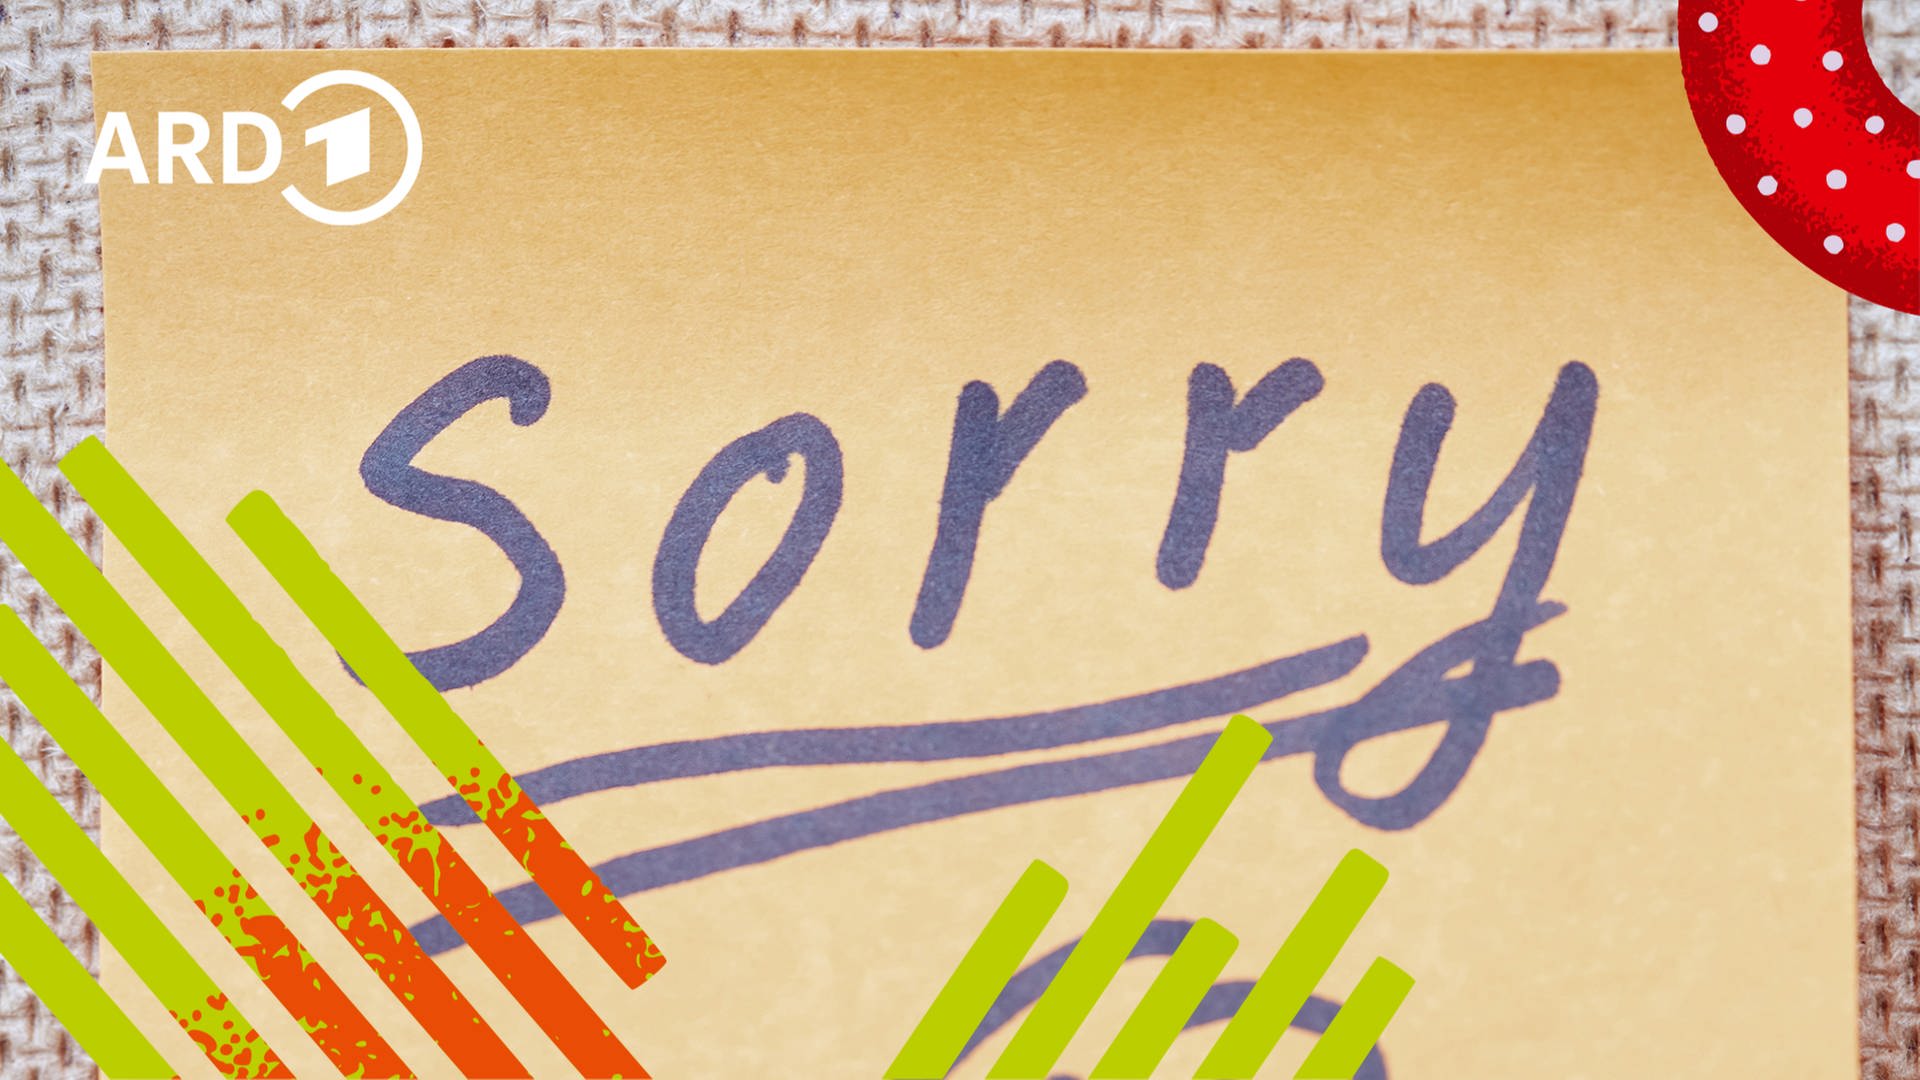 Auf einem Postet steht "Sorry" mit einem traurigen Smiley geschrieben.